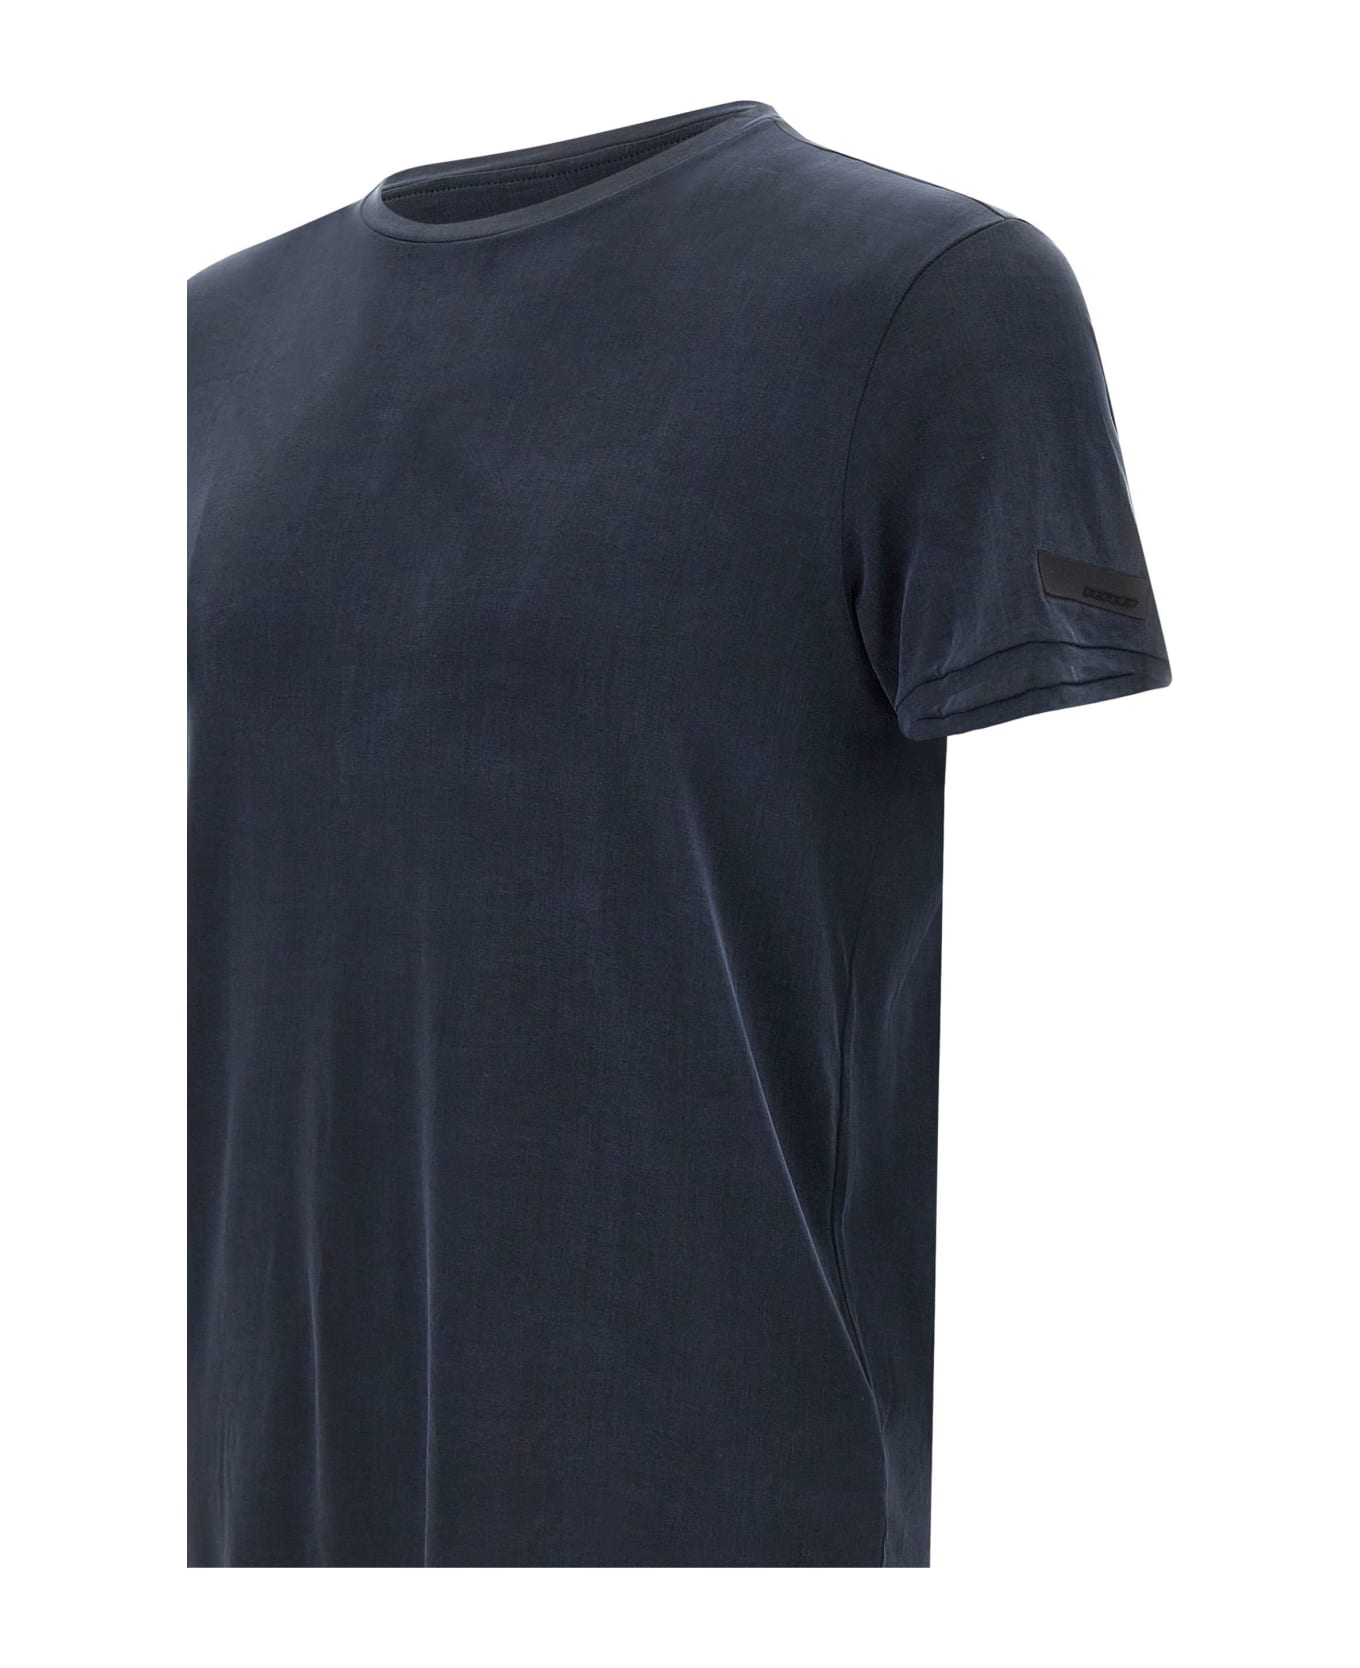 RRD - Roberto Ricci Design 'cupro Shirty' T-shirt - Blue black